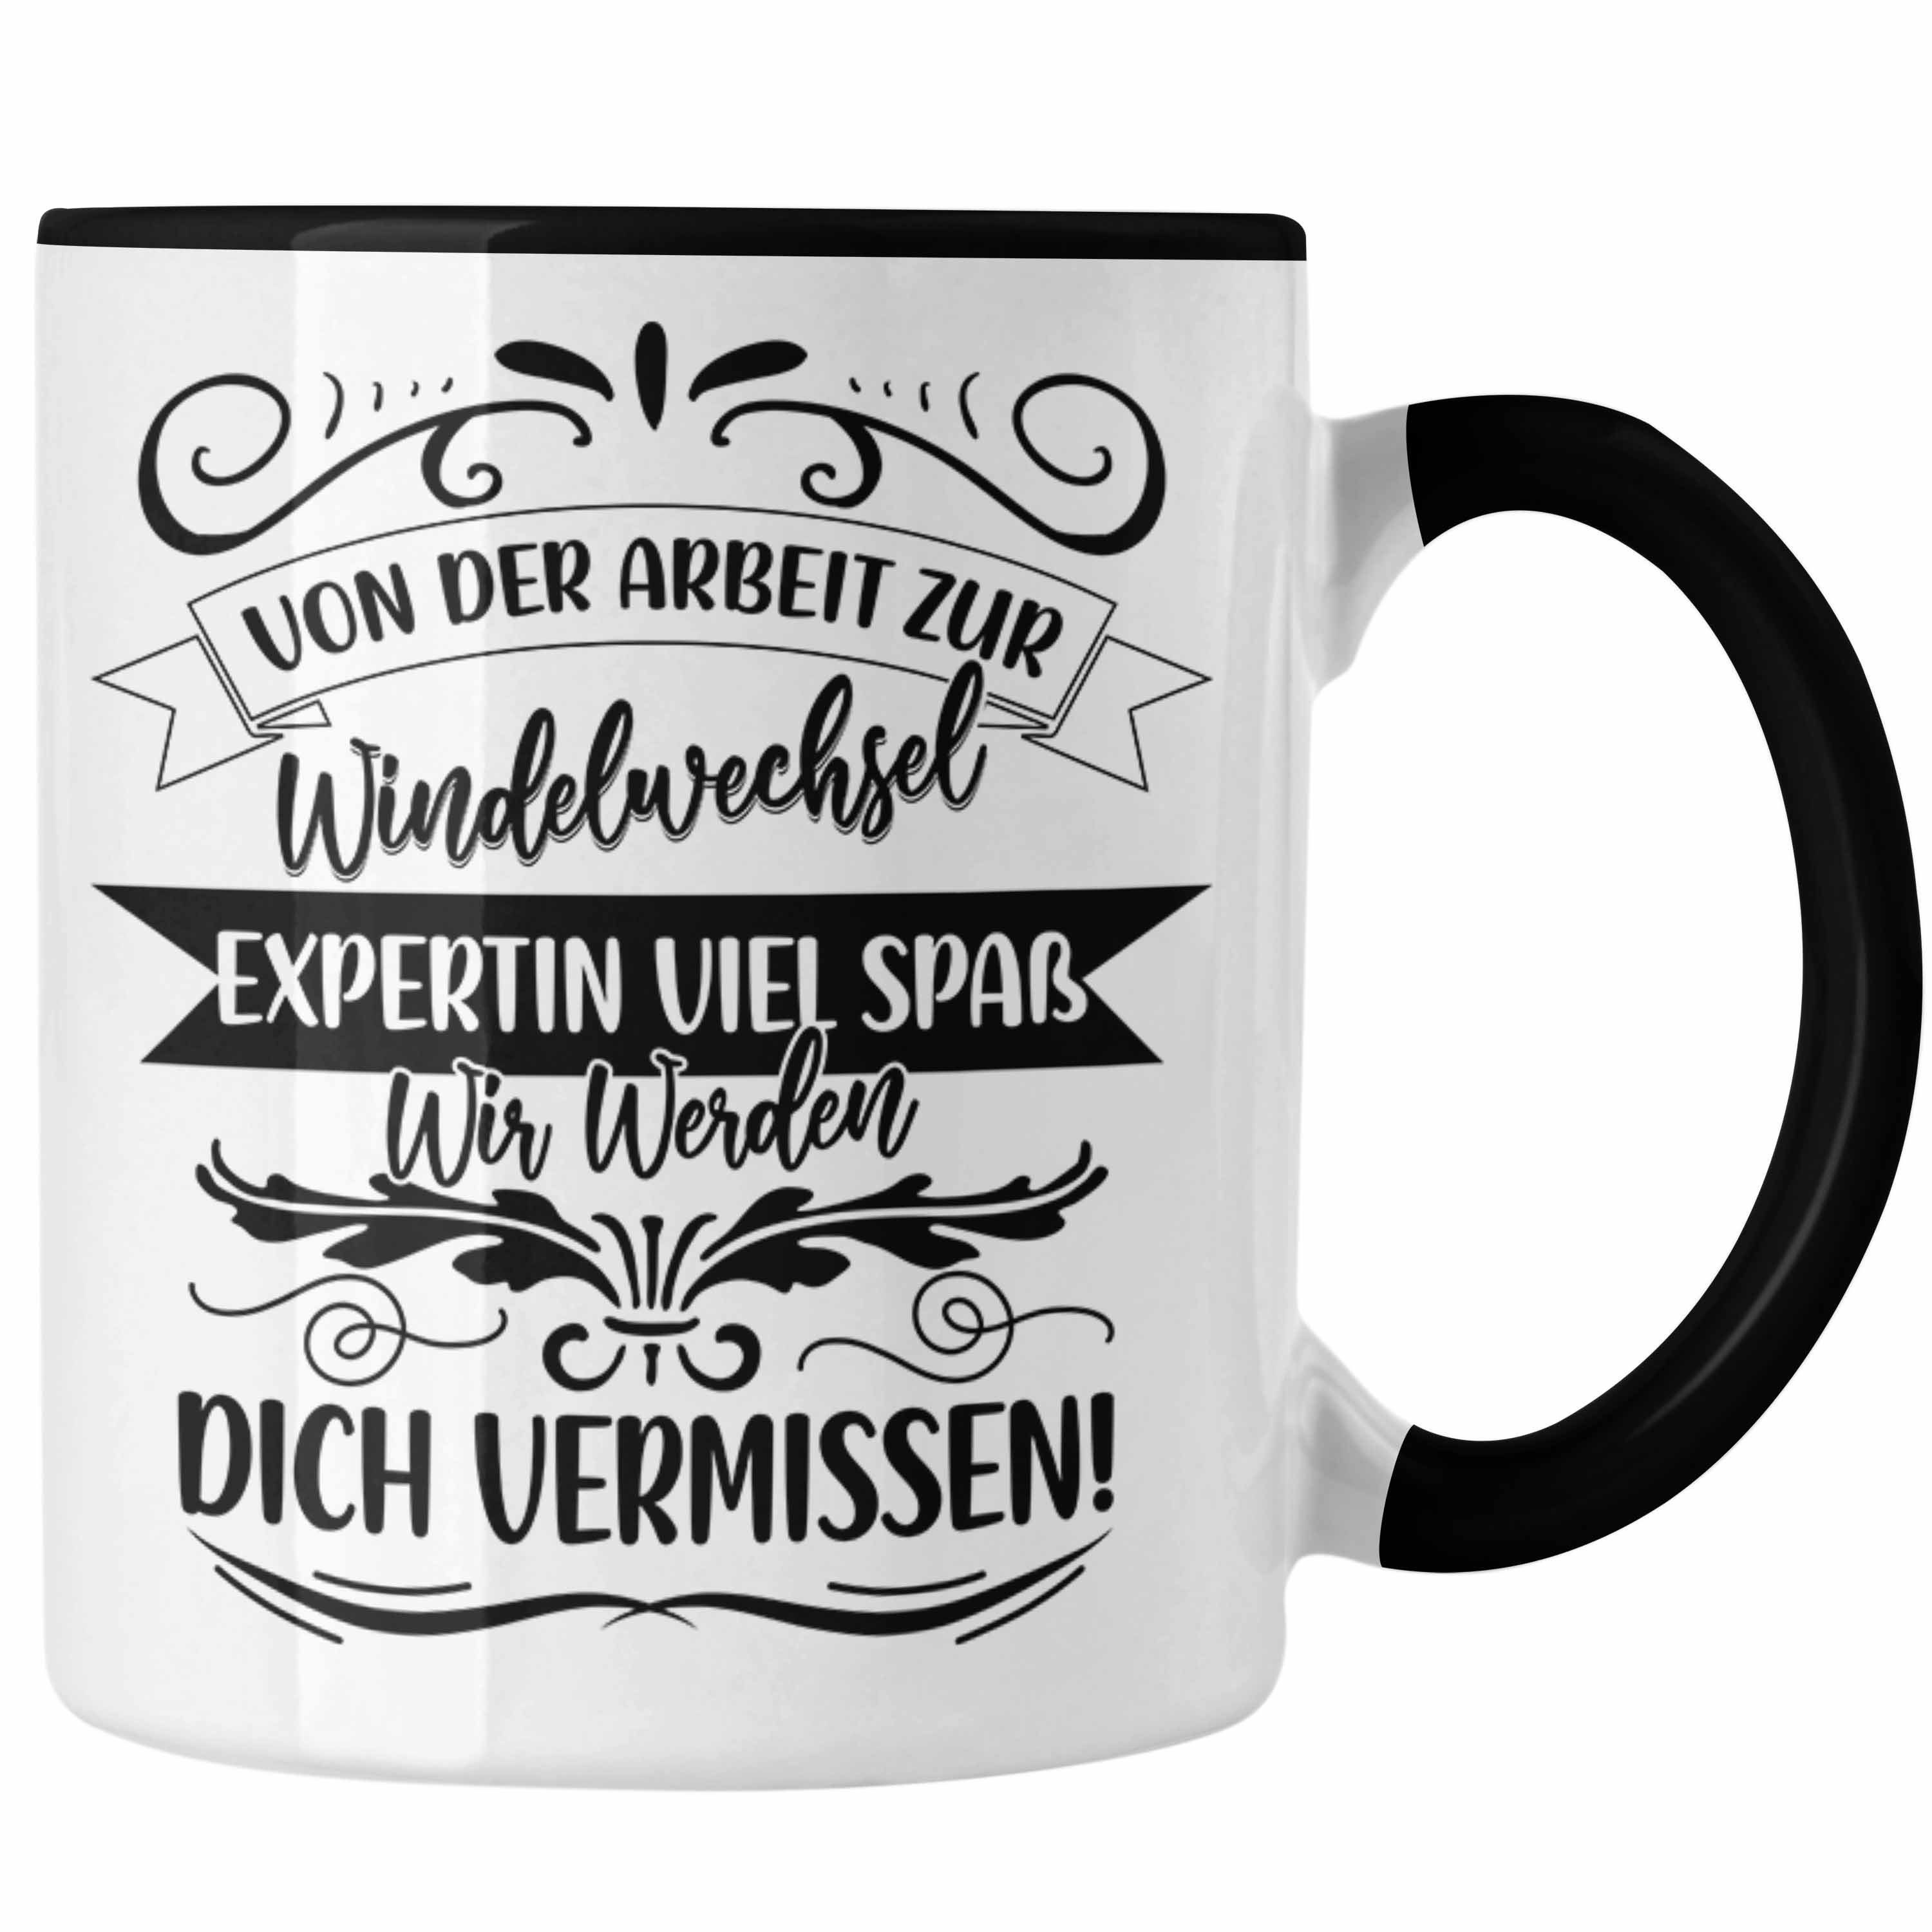 Trendation Tasse Mutterschutz Tasse Geschenk Abschied Mutterschutz Kaffeetasse Kollegi Schwarz